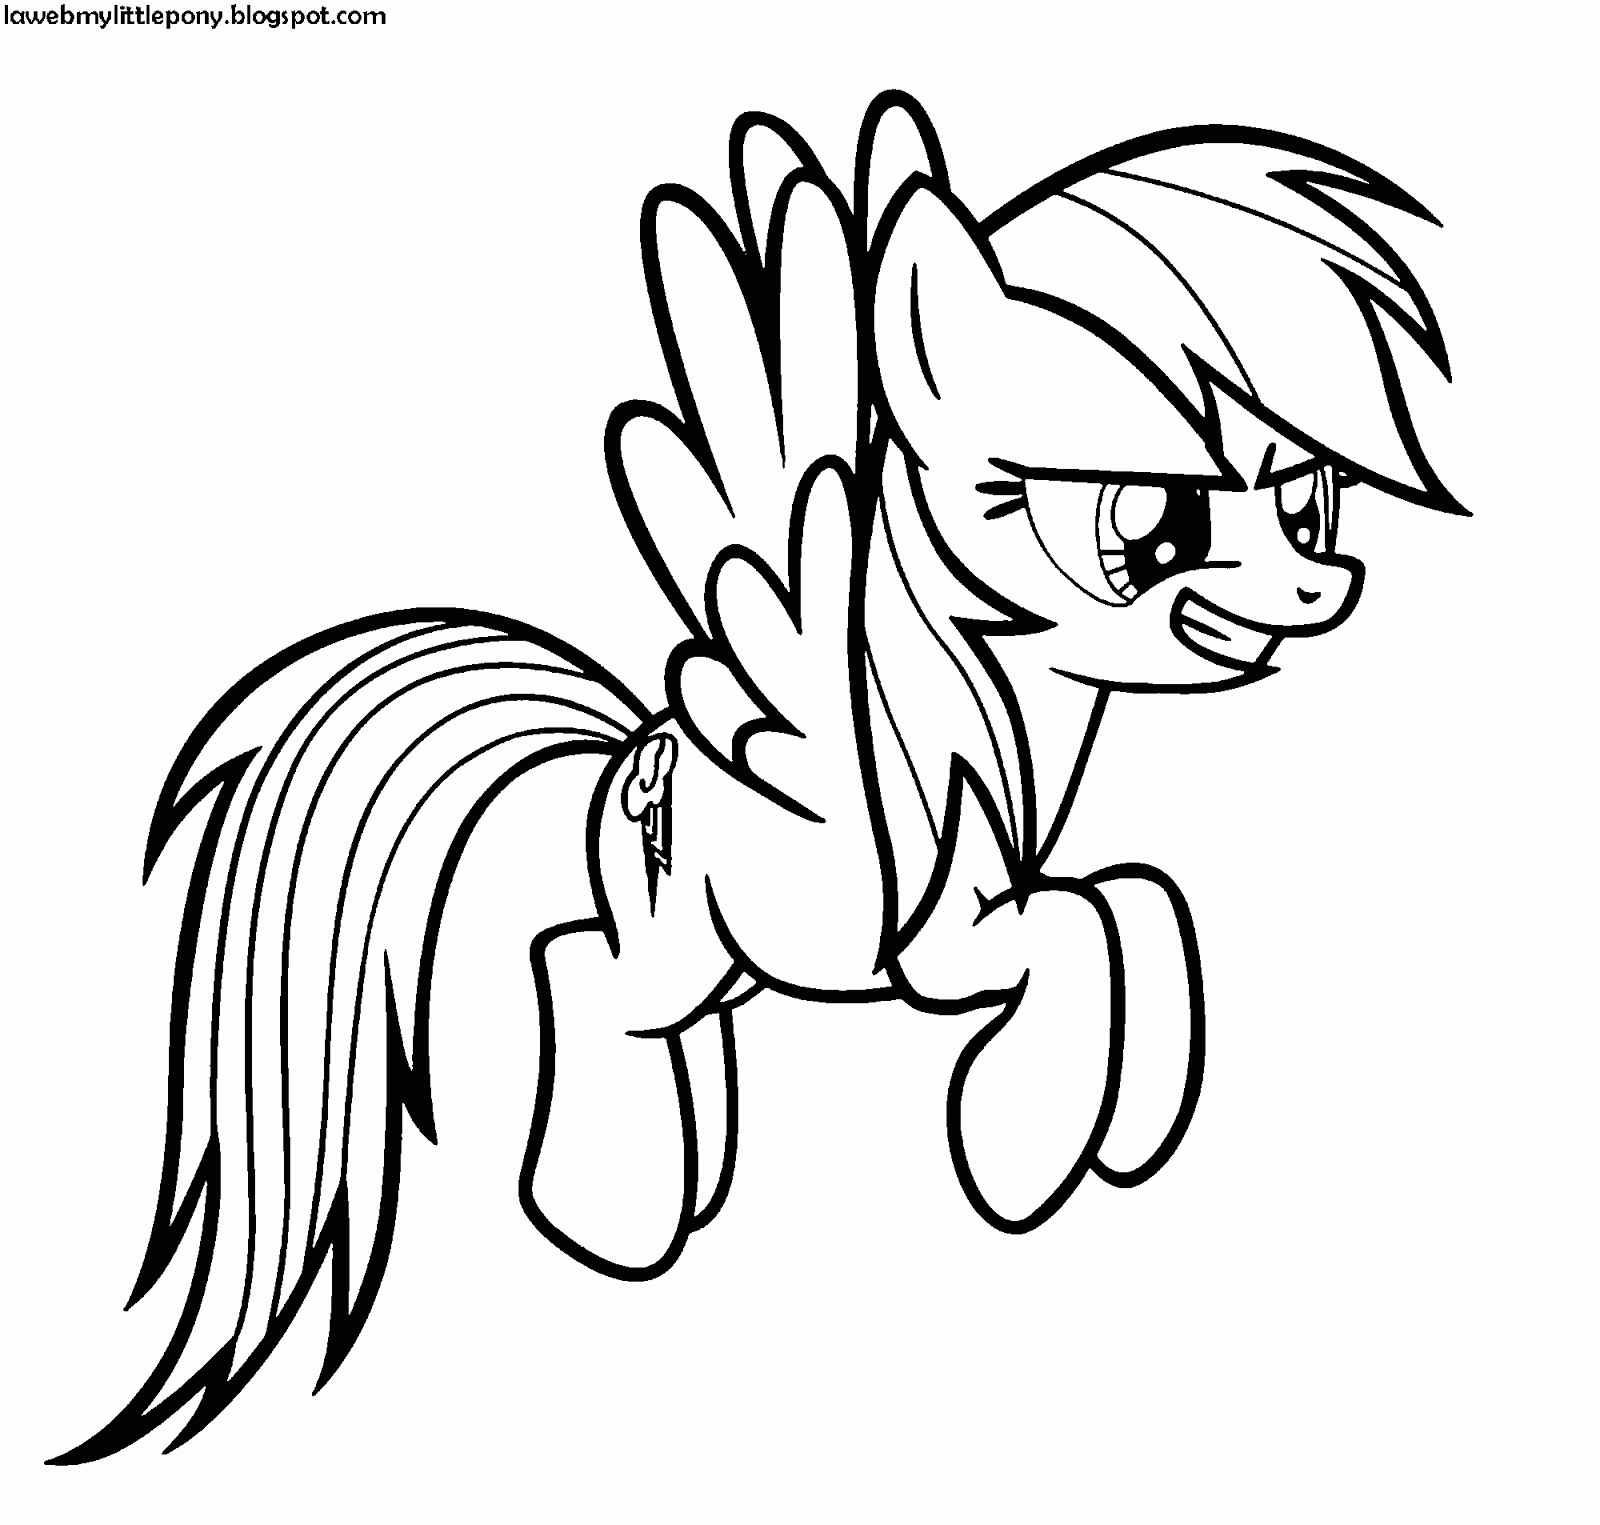 My Little Pony: Dibujos Para Colorear De Rainbow Dash De My Little Pony avec Coloriage My Little Pony Rainbow Dash